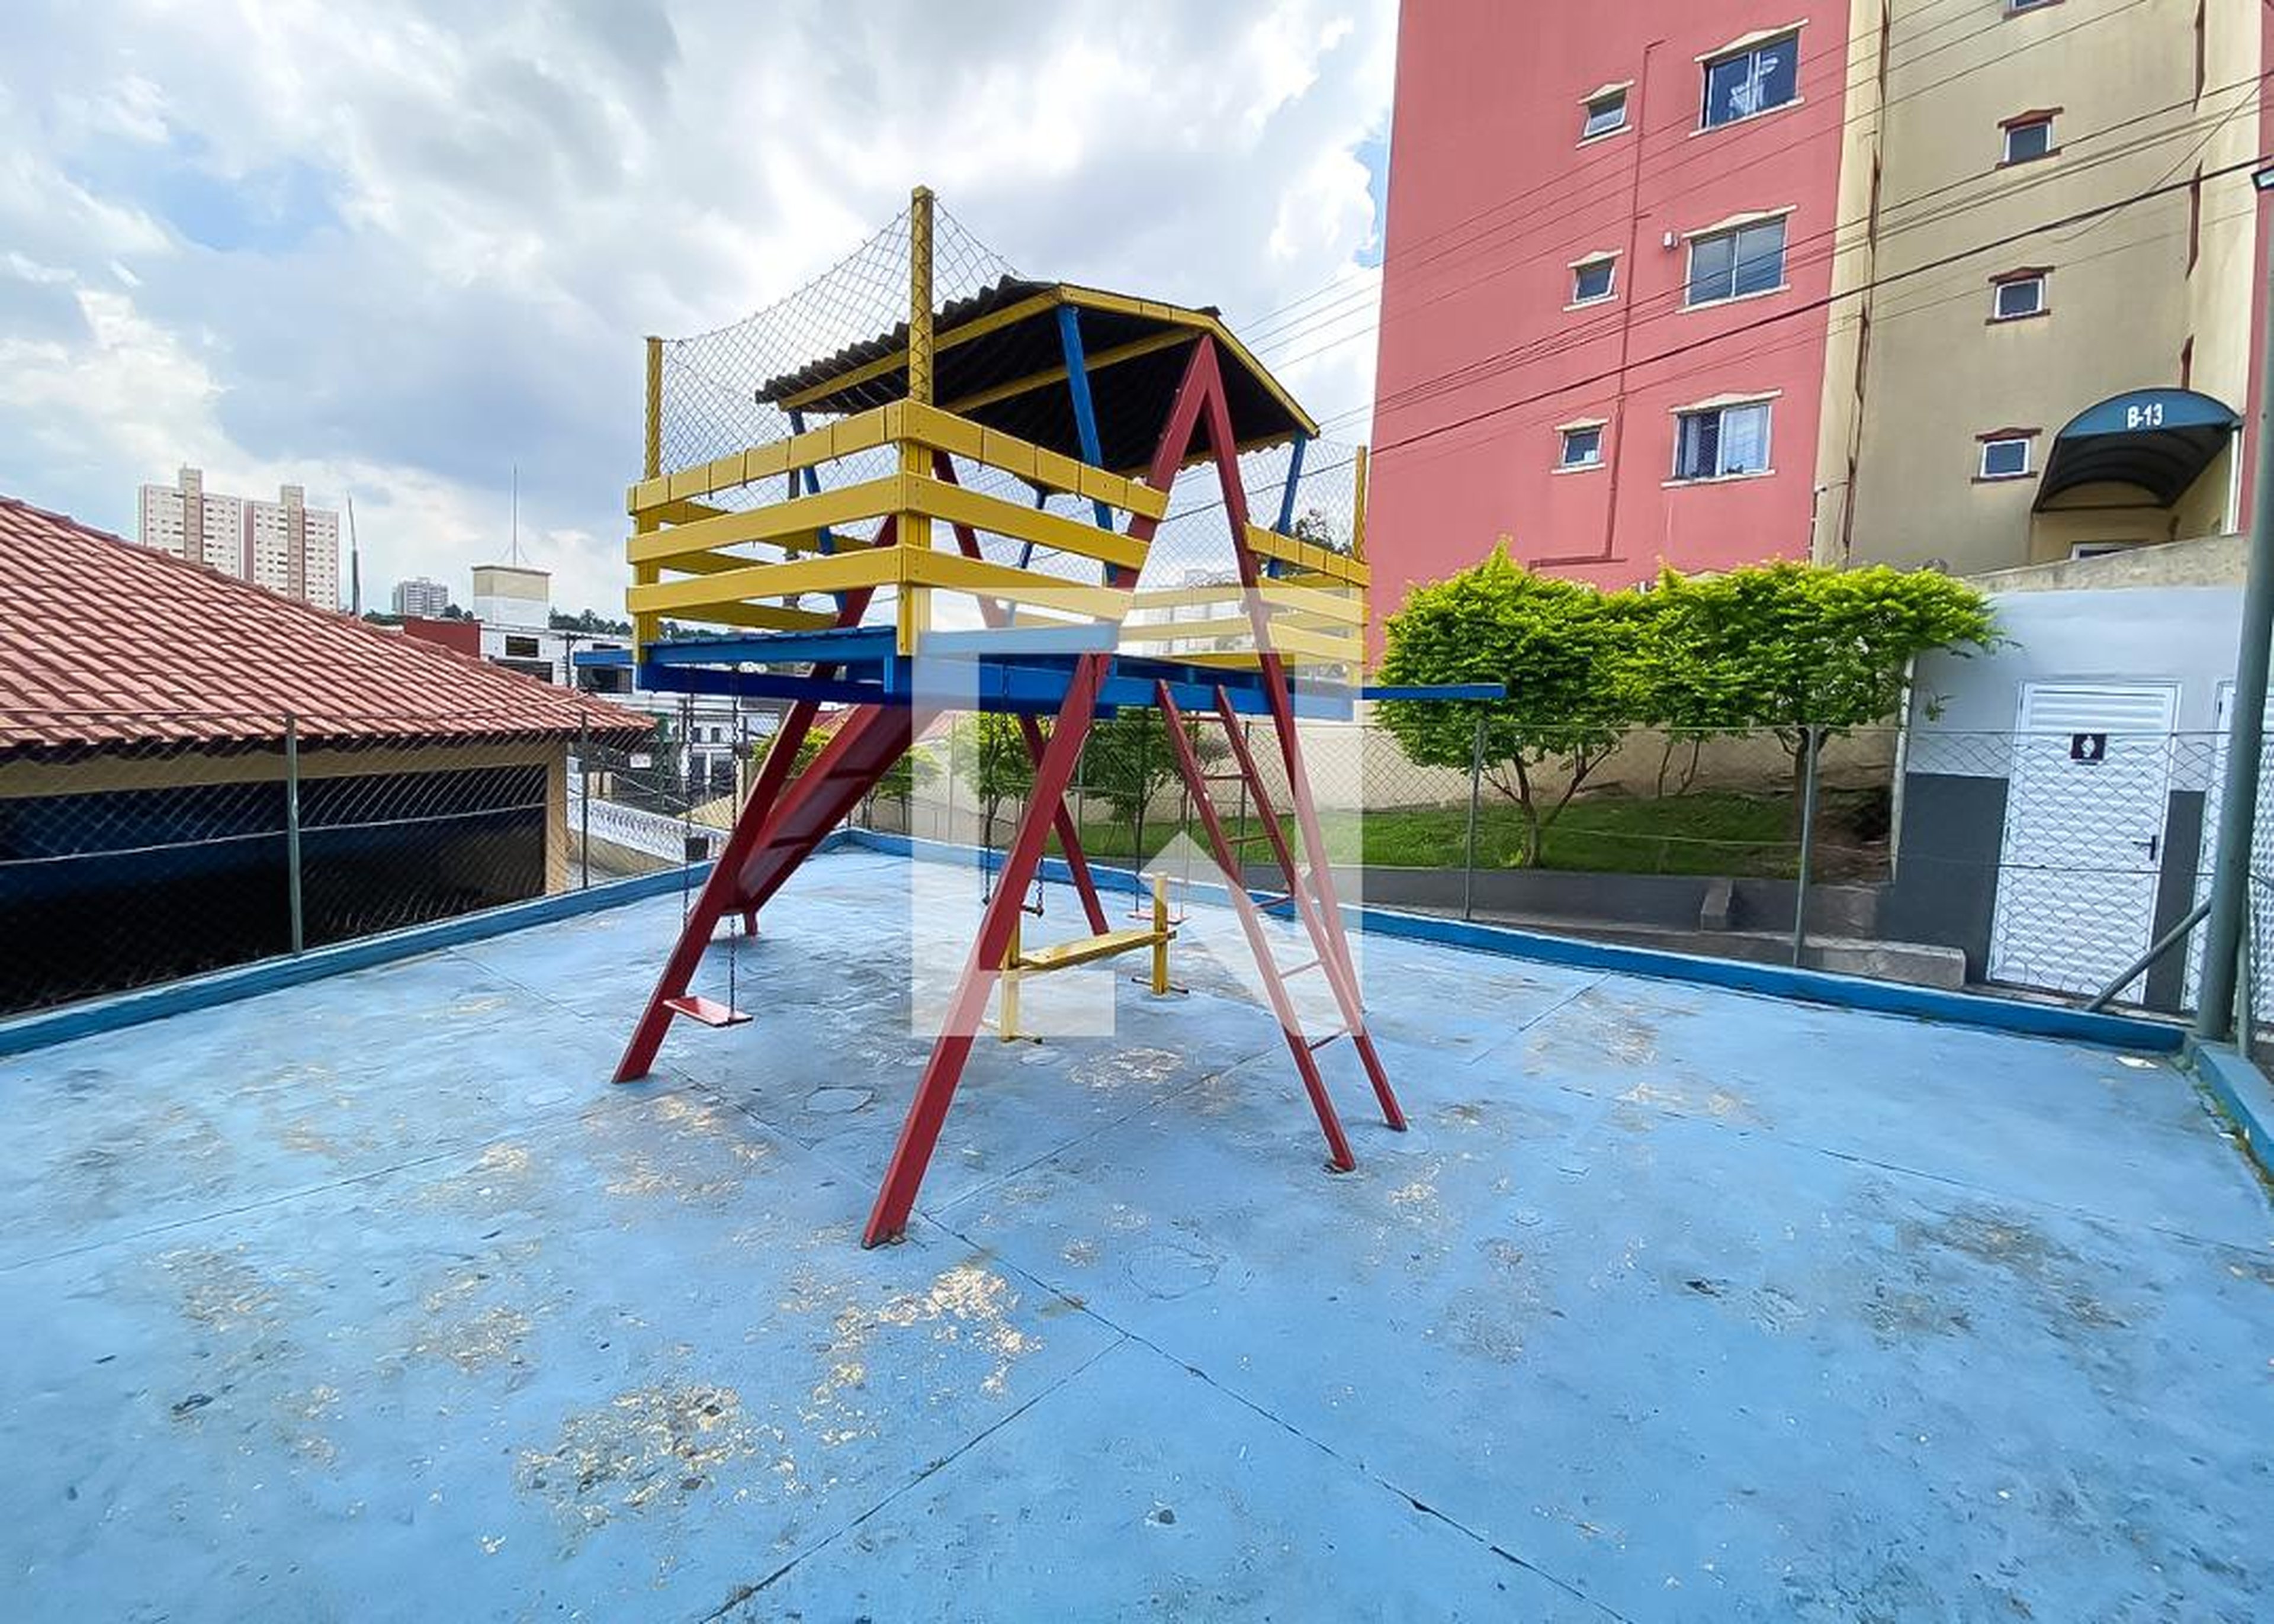 Playground - Arco-Íris